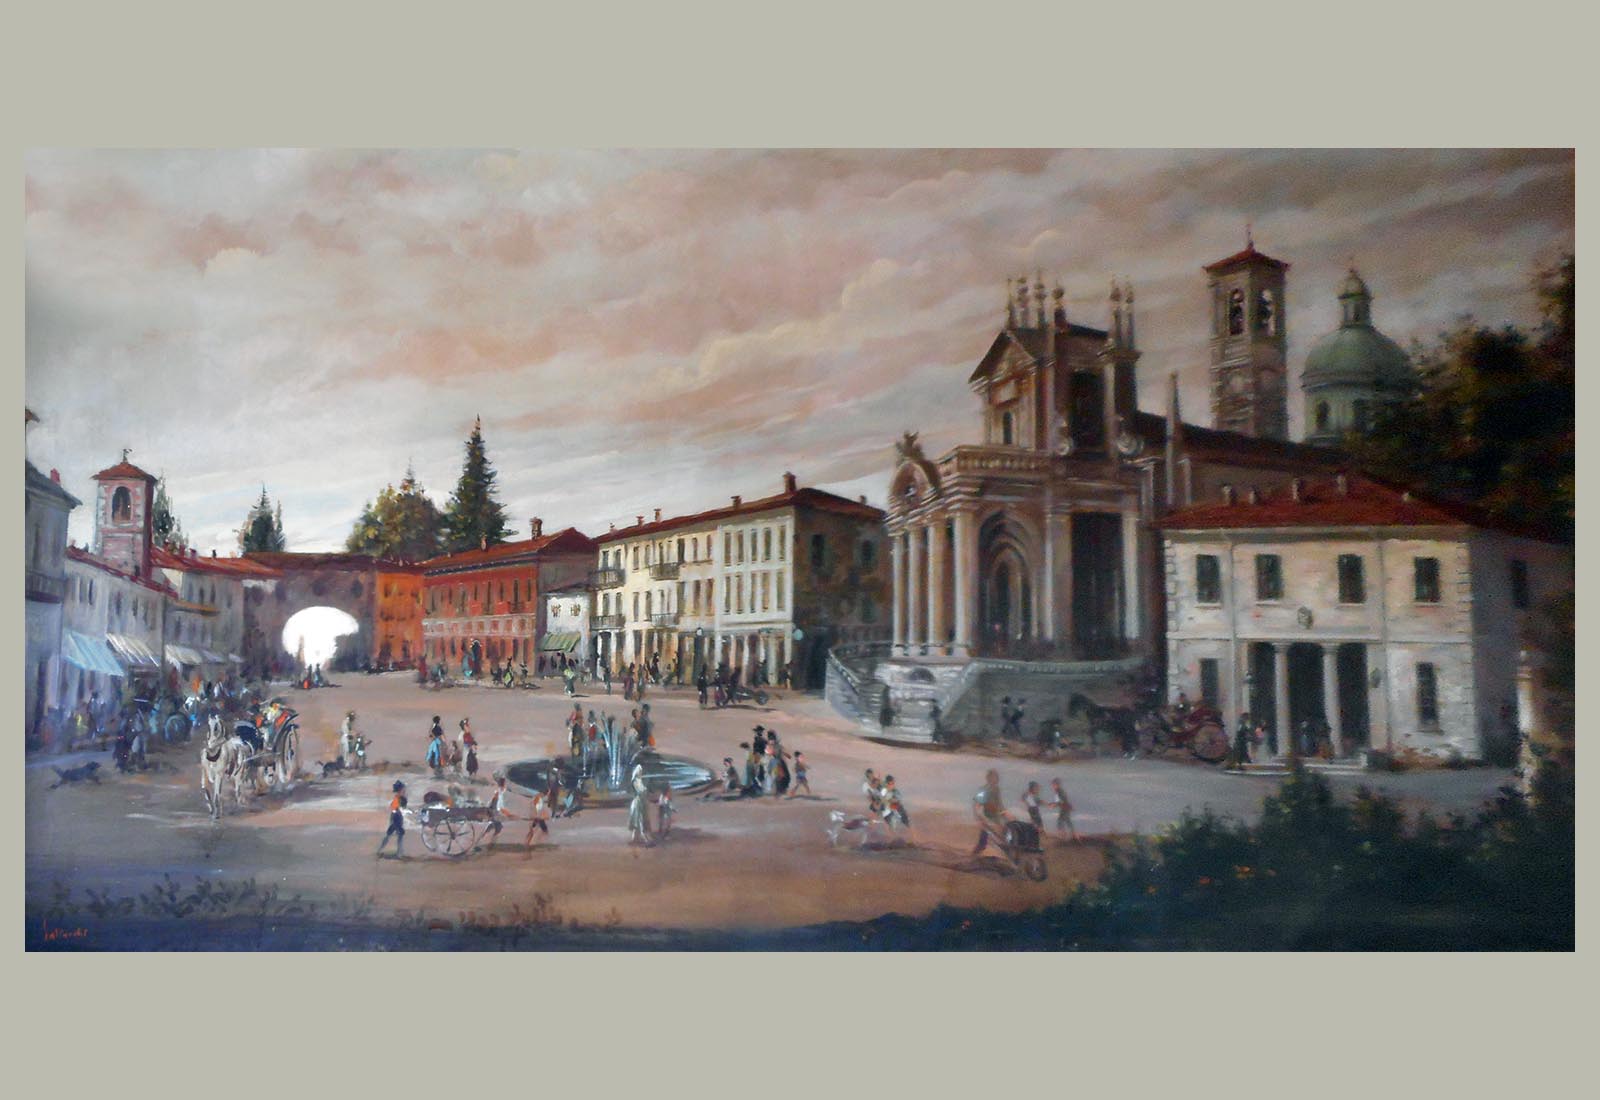 Piazza Libertà in Appiano Gentile - Picture of the square